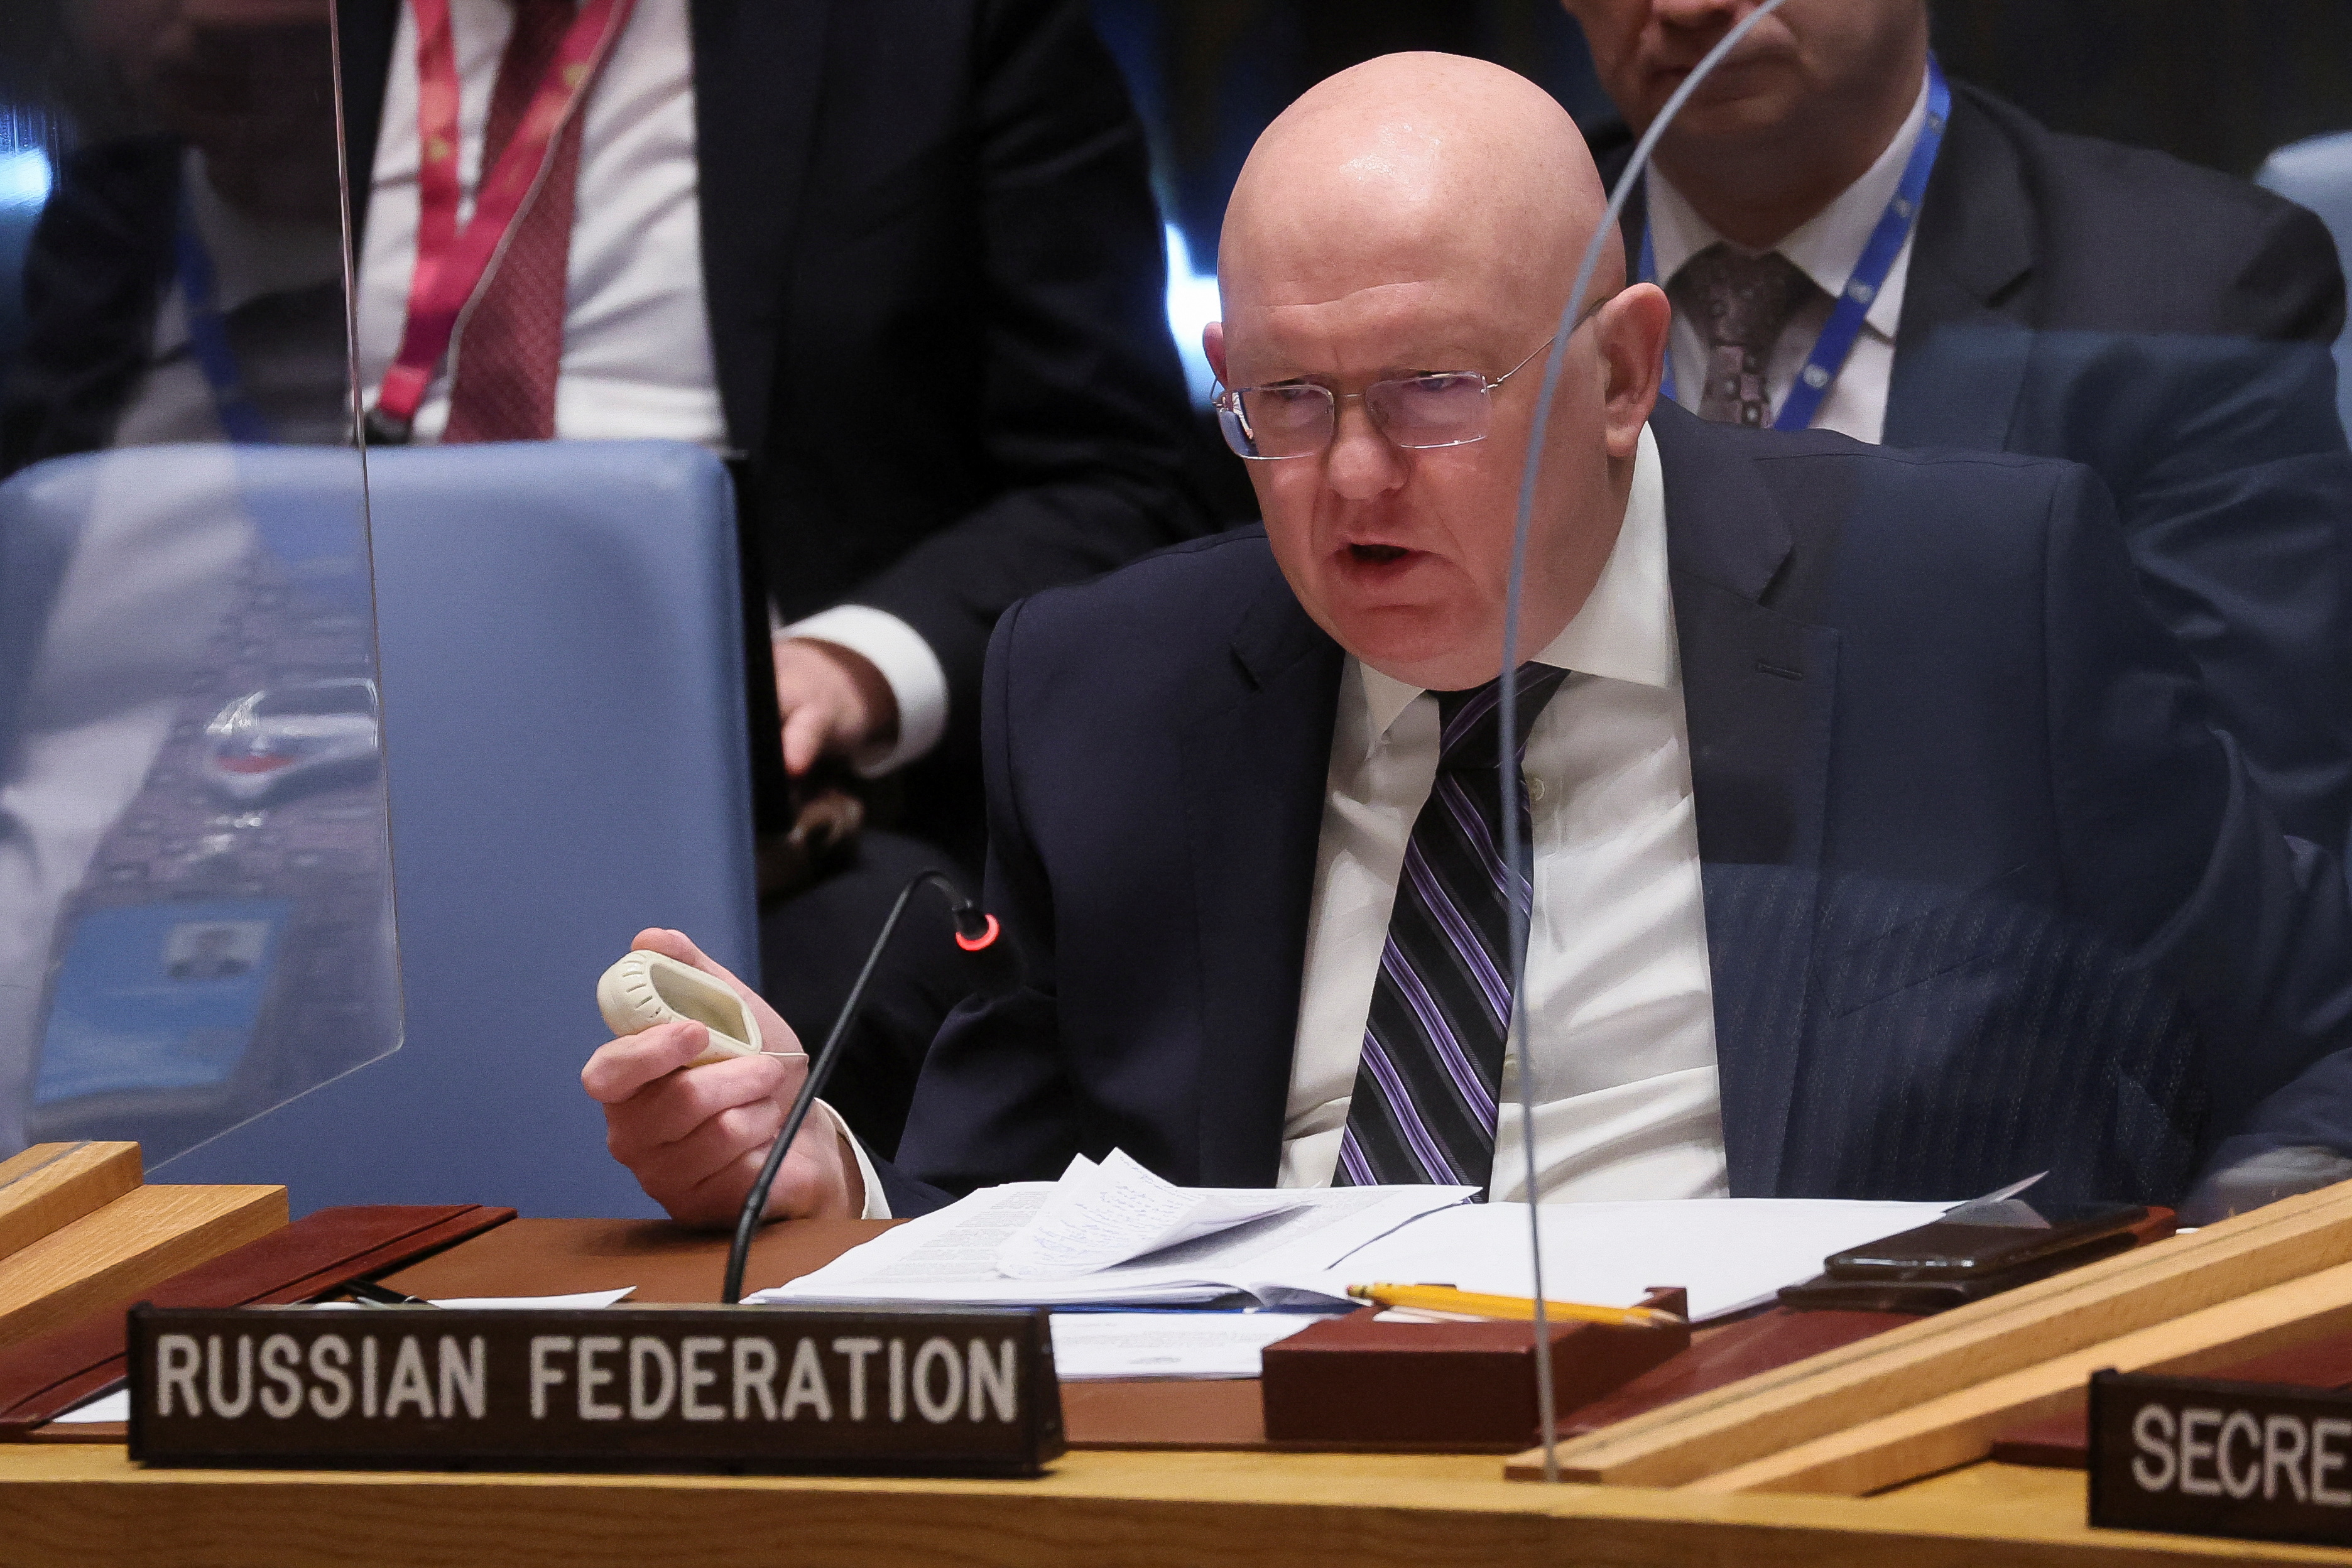 El representante de Rusia ante las Naciones Unidas, el embajador Vassily Nebenzia, habla durante una reunión del Consejo de Seguridad de las Naciones Unidas, en medio de la invasión rusa de Ucrania, en la sede de las Naciones Unidas en Nueva York, Nueva York, Estados Unidos, 18 de marzo de 2022. REUTERS/Brendan McDermid